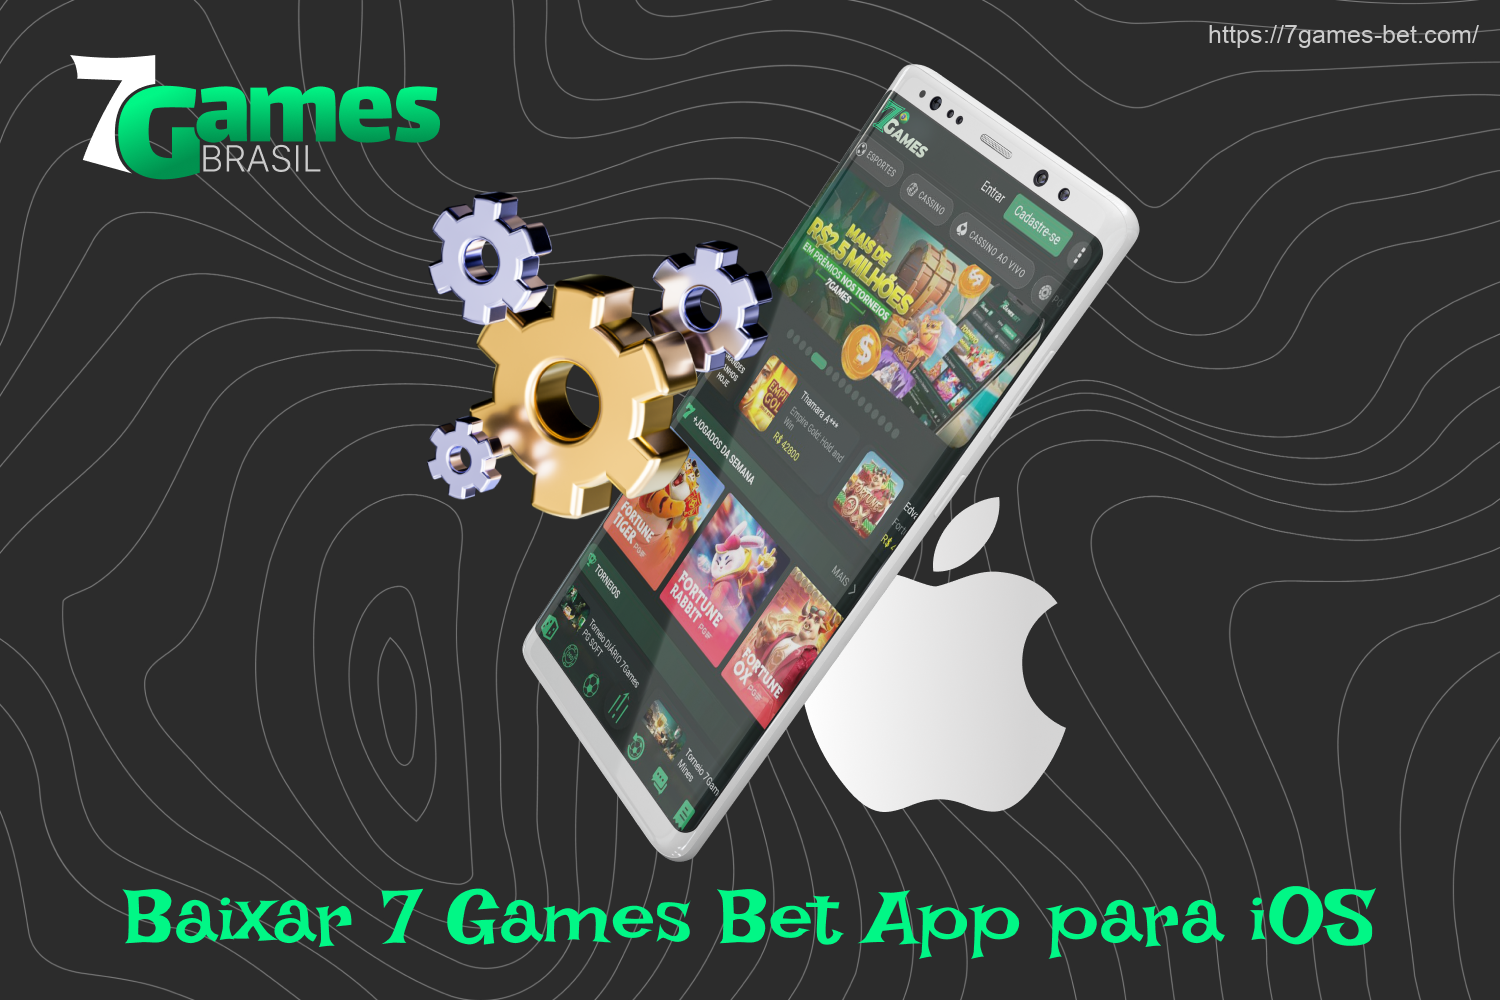 Depois de fazer o download do aplicativo de apostas 7Games no iOS, os apostadores brasileiros poderão apostar em qualquer esporte a qualquer momento